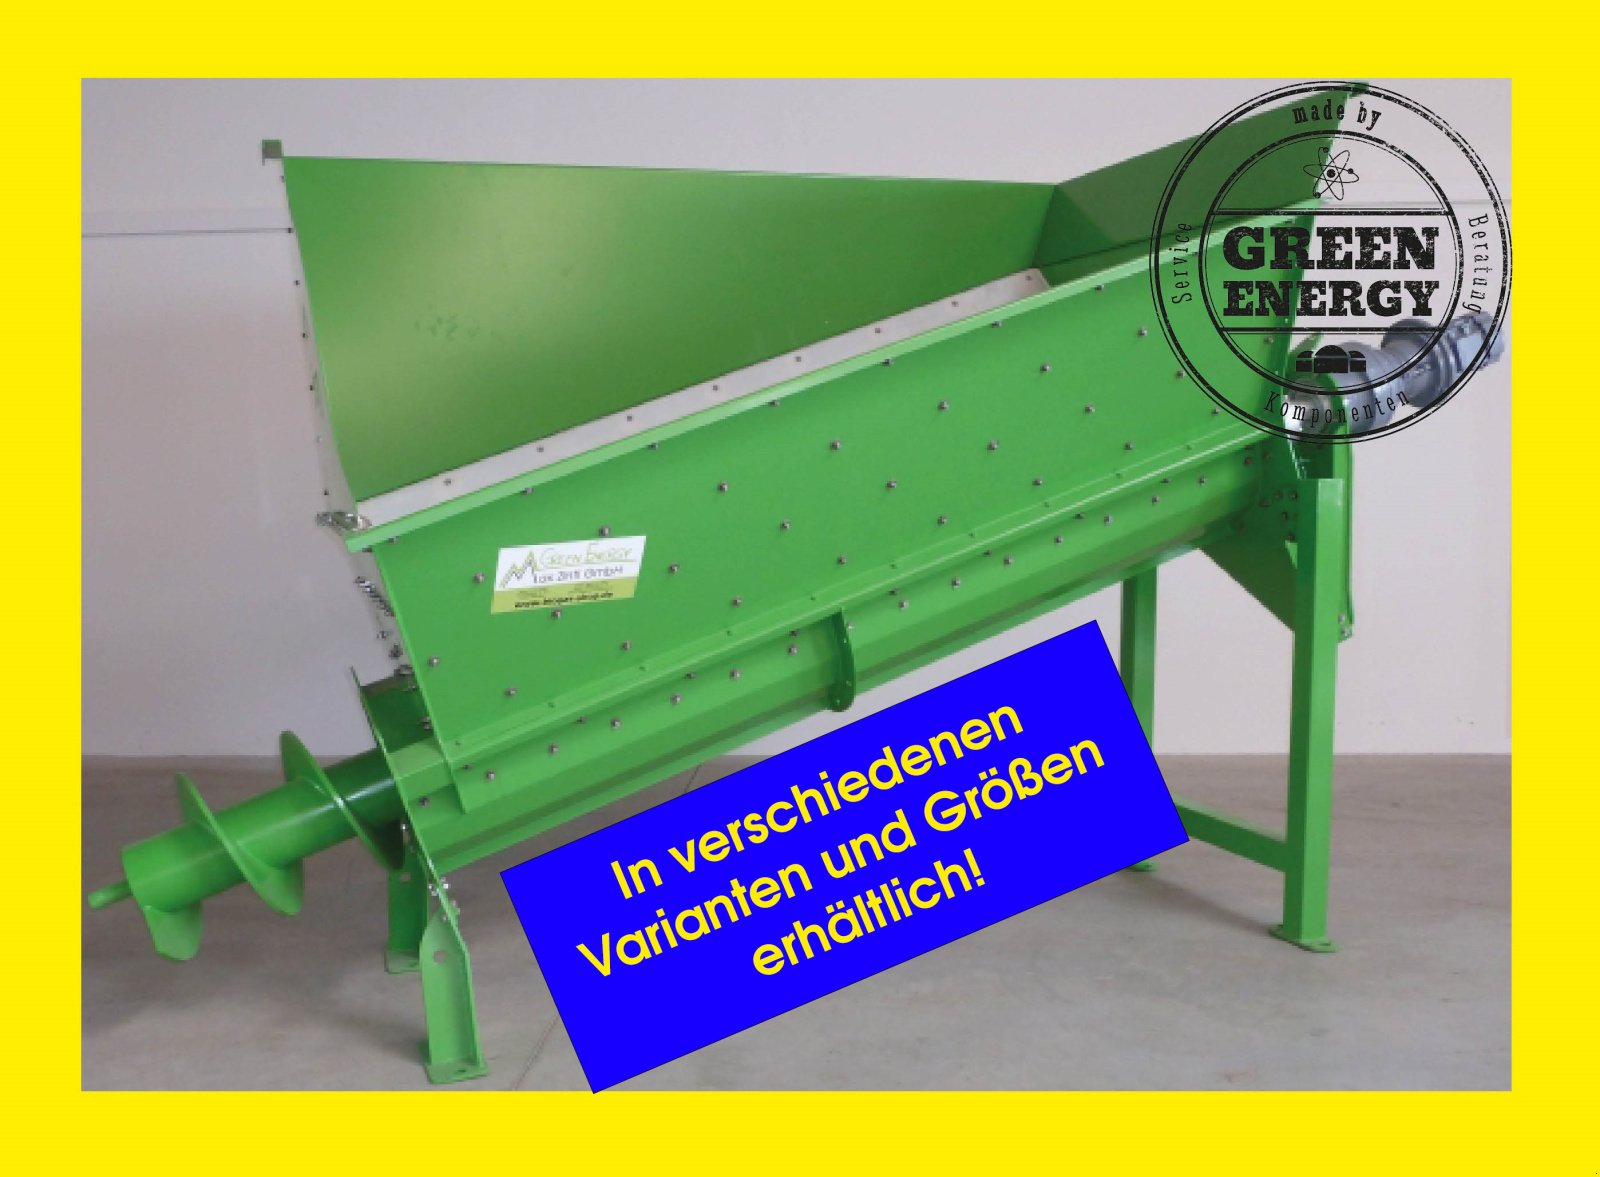 Einbringtechnik des Typs Green Energy Biogas: EBT055 Einbringtechnik "smart shuffle", Neumaschine in Mitterteich (Bild 1)